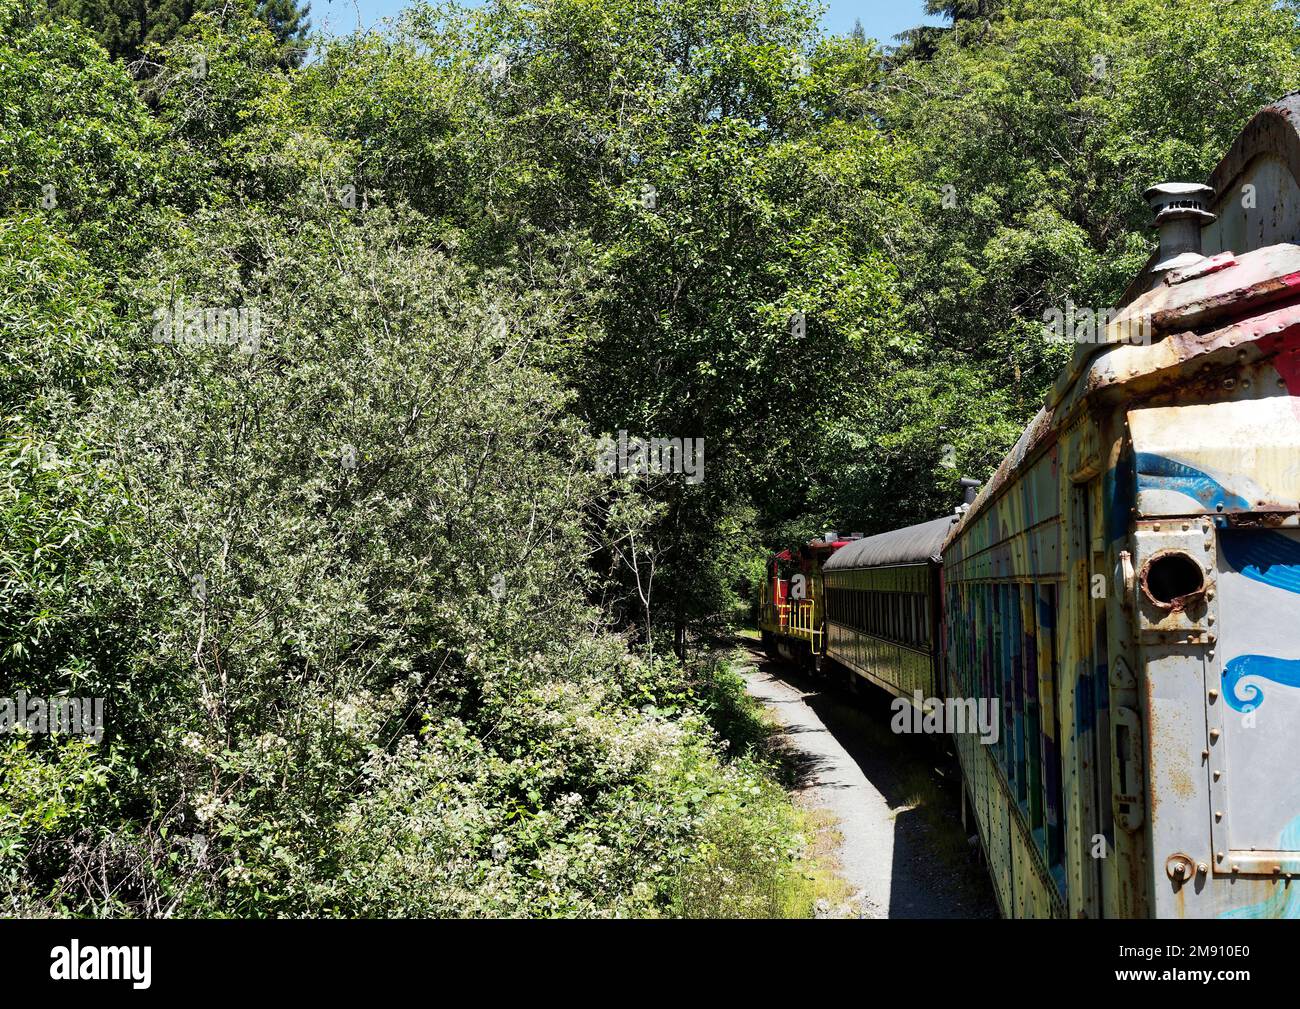 Mendocino Railway (il treno Skunk), è una ferrovia storica della contea di Mendocino, California, con questa linea da Fort Bragg lungo Pudding Creek. Foto Stock